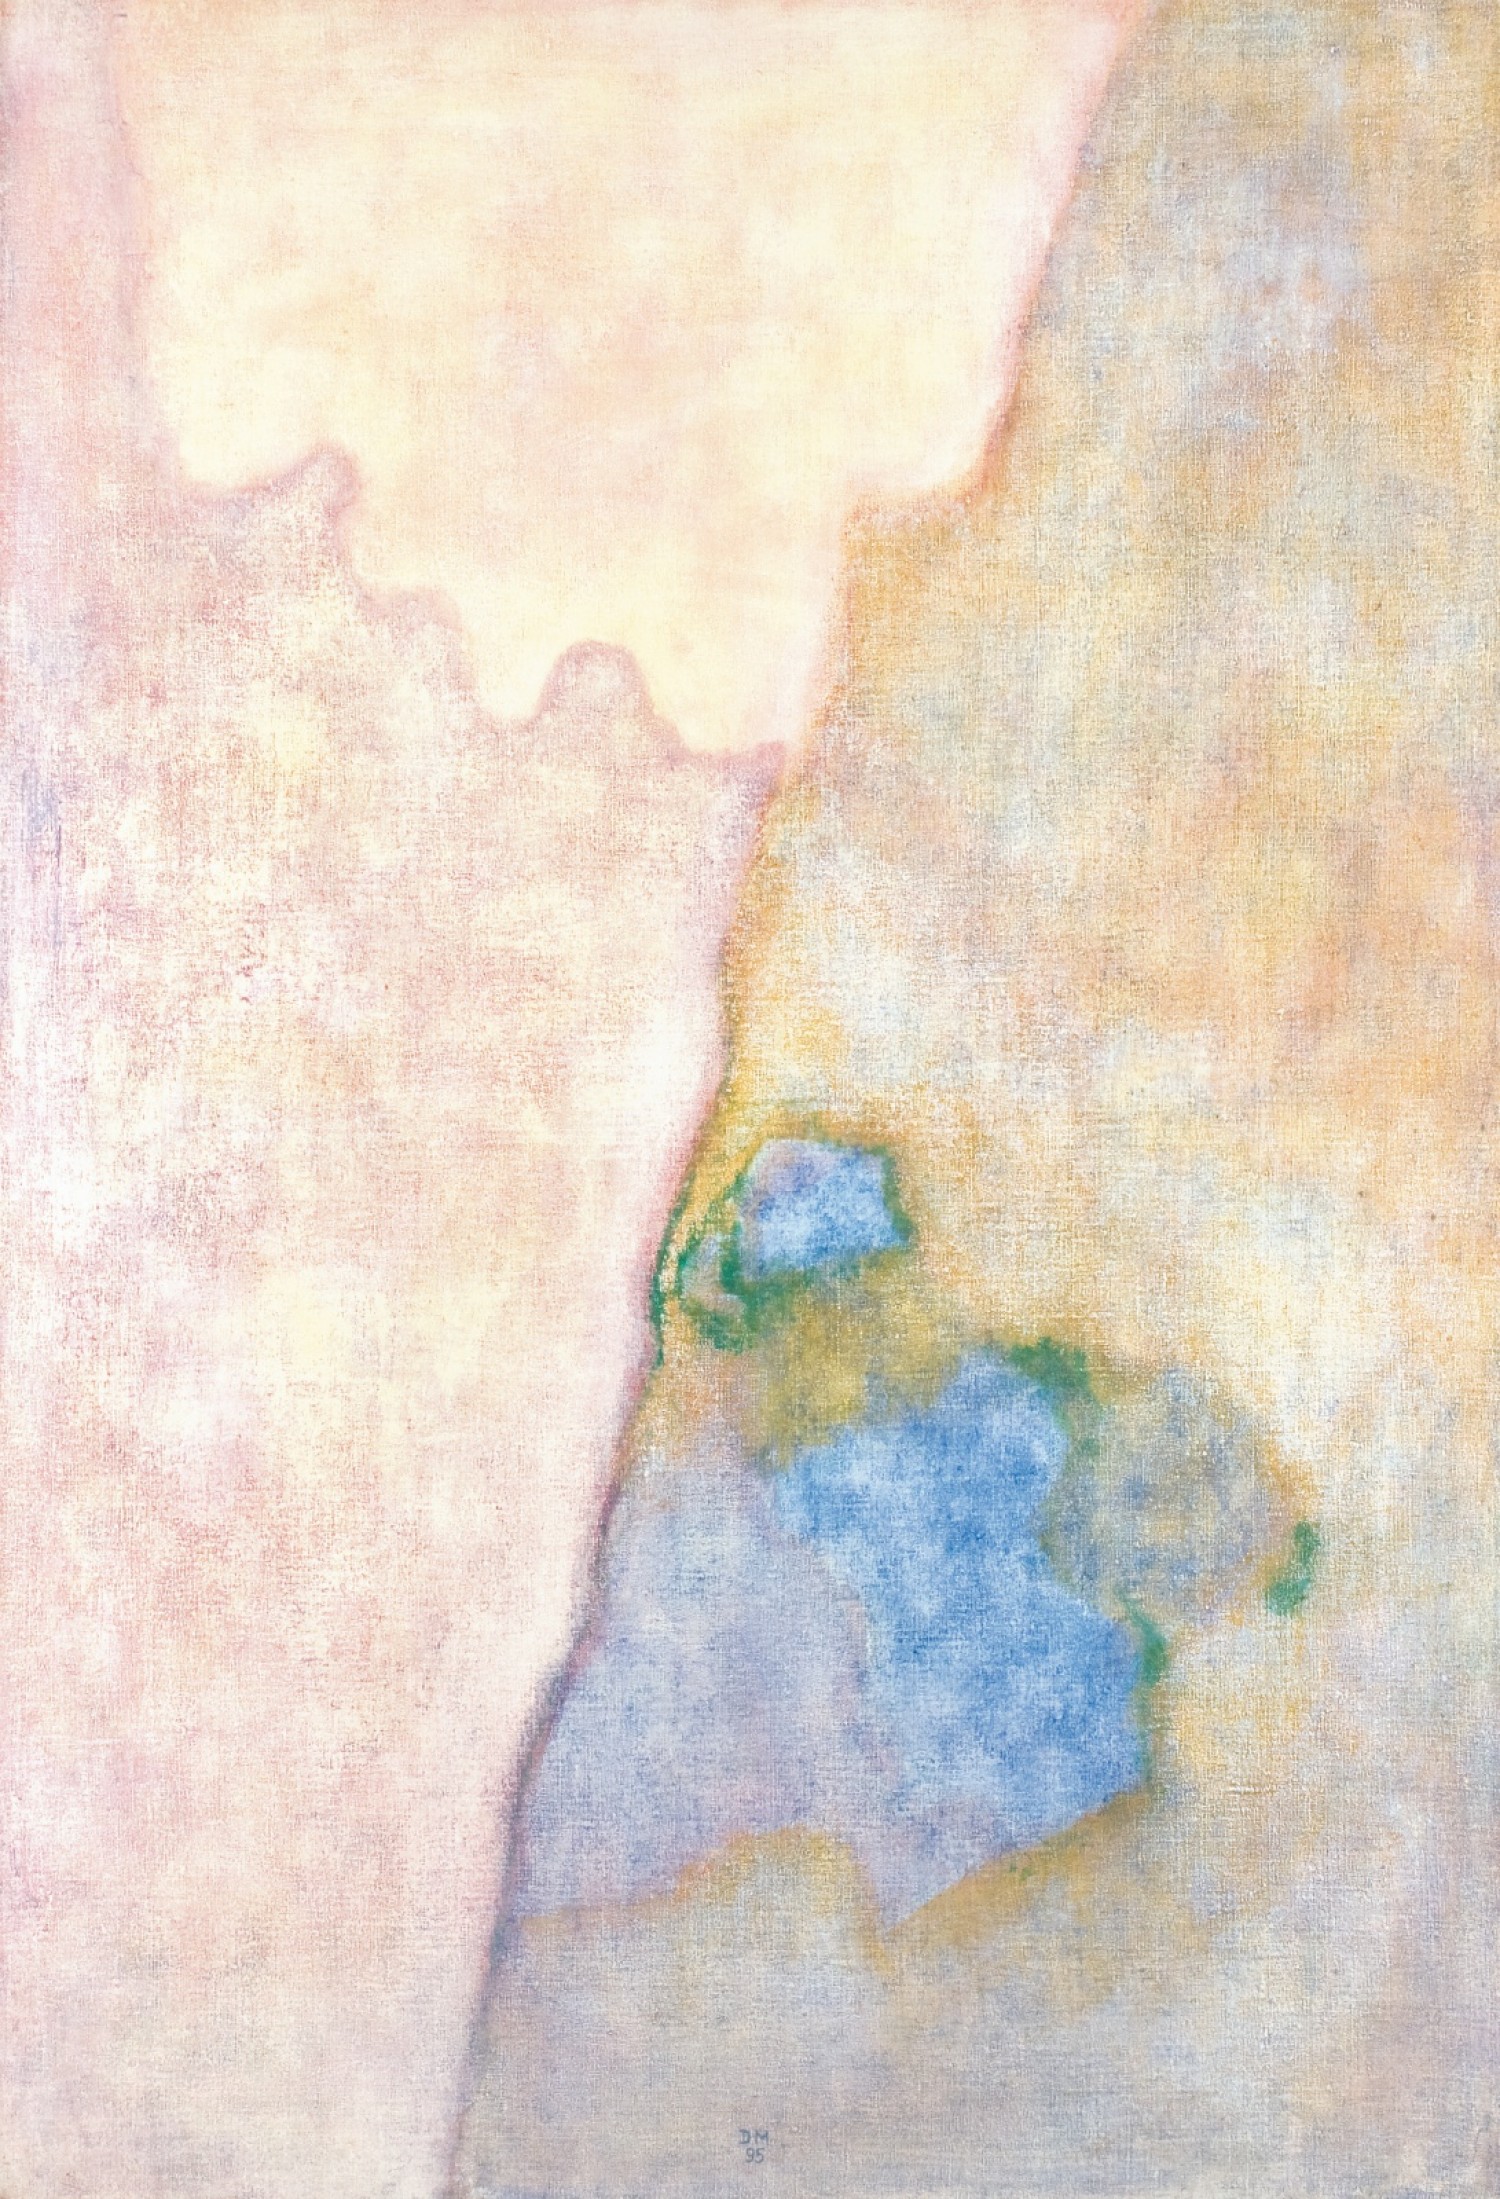 Daisy Mrázková: Skály, 1995, tempera na plátně, 125 x 95 cm, cena: 175 000 Kč, Prague Auctions 5. 10. 2014